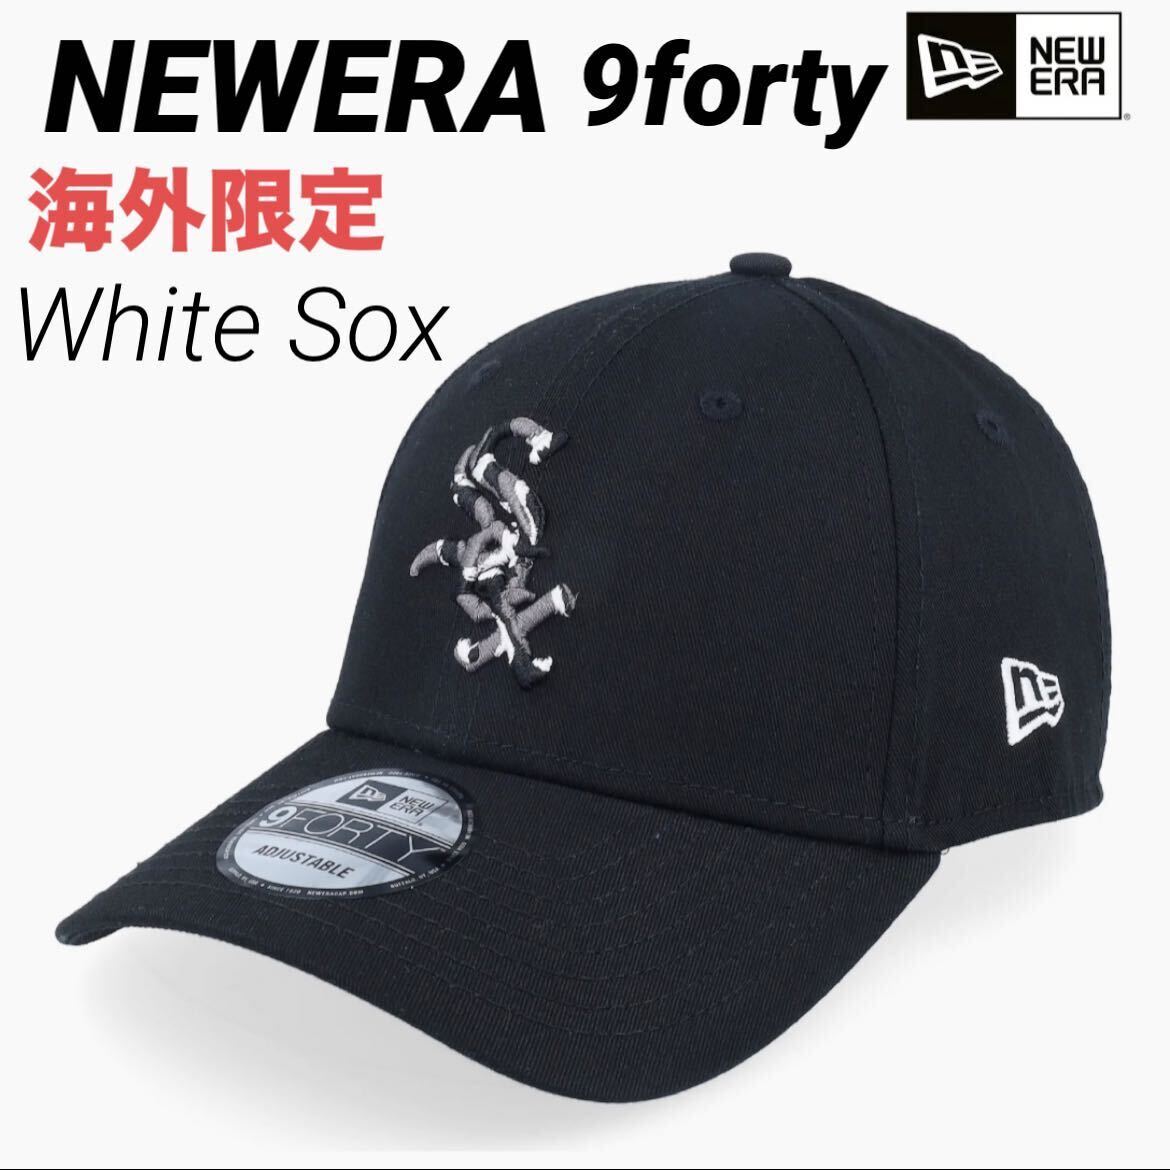 NEWERA ニューエラ キャップ 帽子 シカゴ ホワイトソックス ユニセックス 9forty sox 柄 モノトーン ブラック 海外限定 正規品